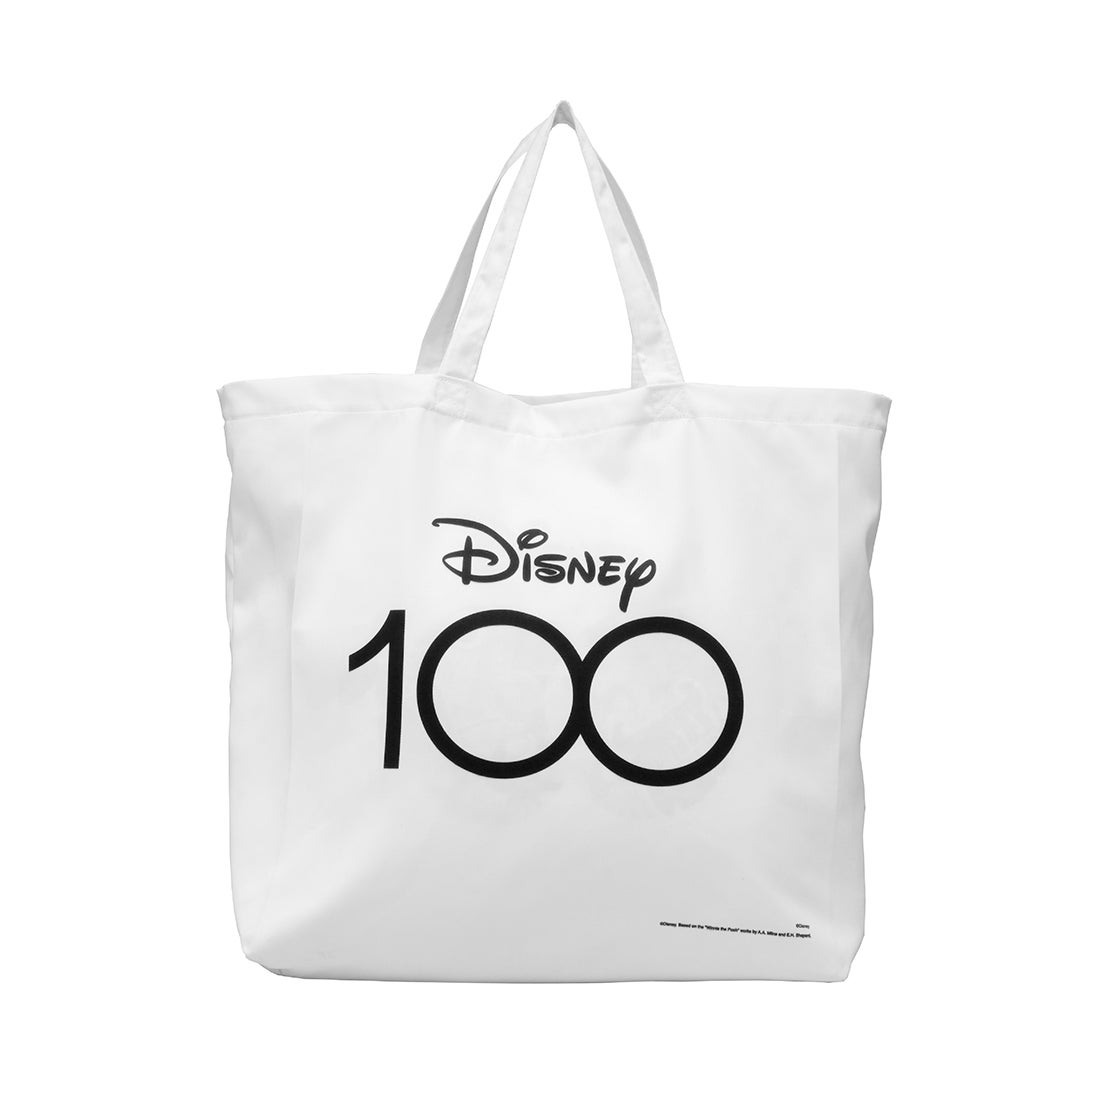 ถุงผ้า Disney Collection D100 สีขาว